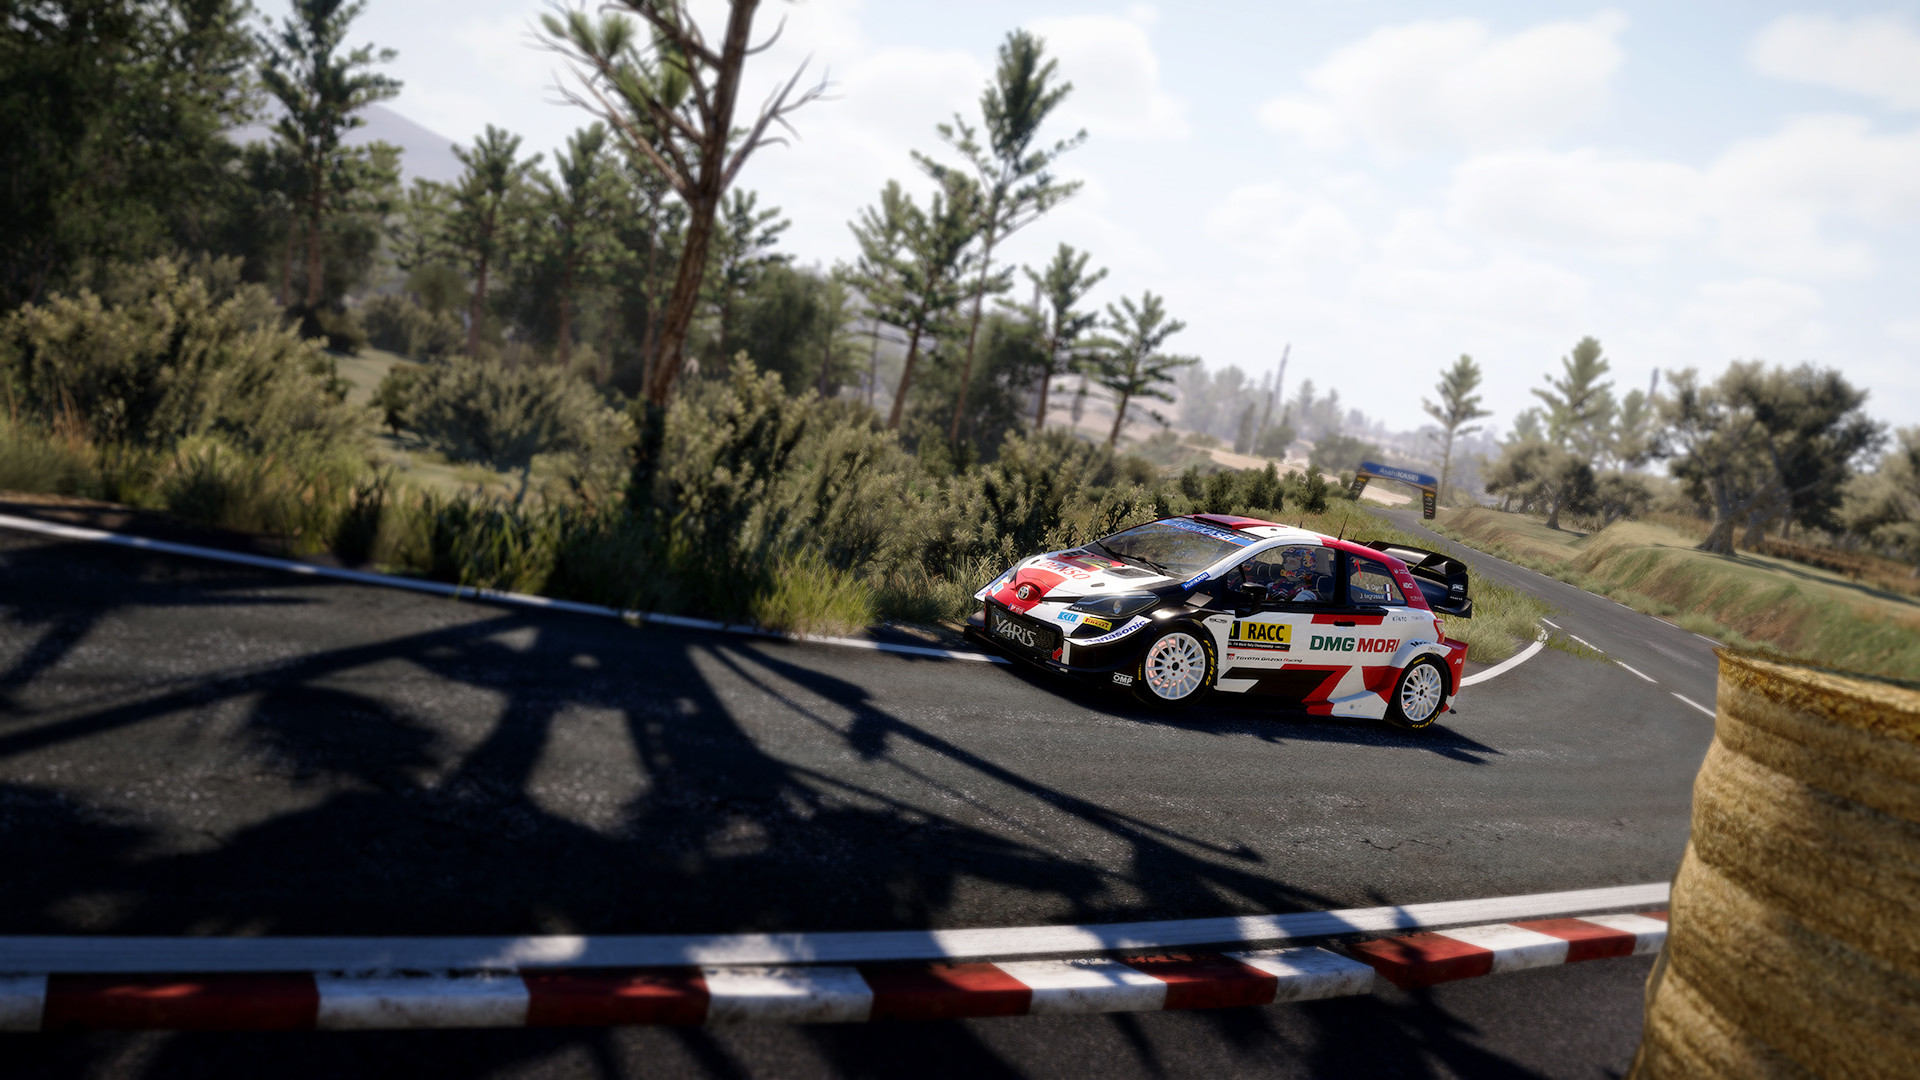 Jogo PS4 WRC 7